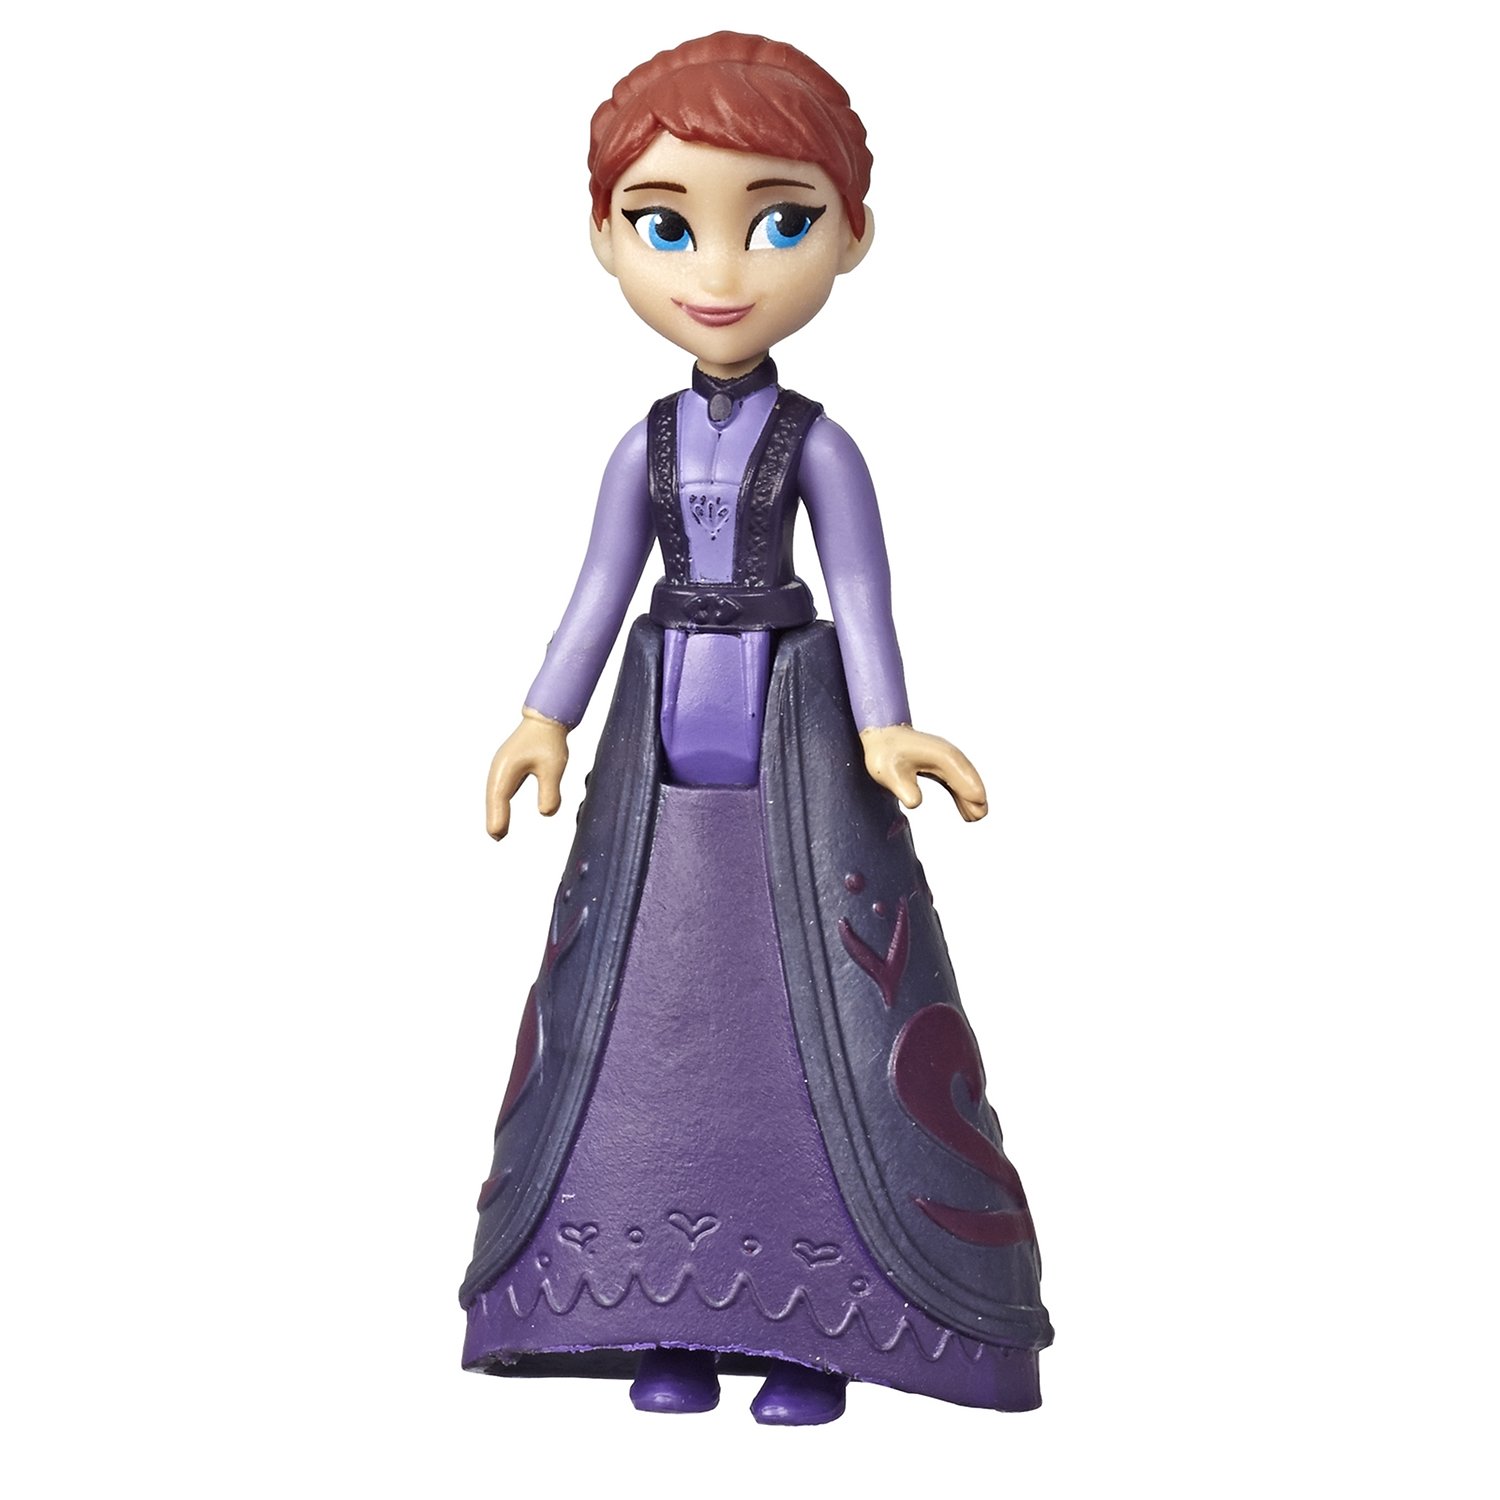  Мини-кукла Disney Princess - Холодное сердце, в закрытой упаковке   